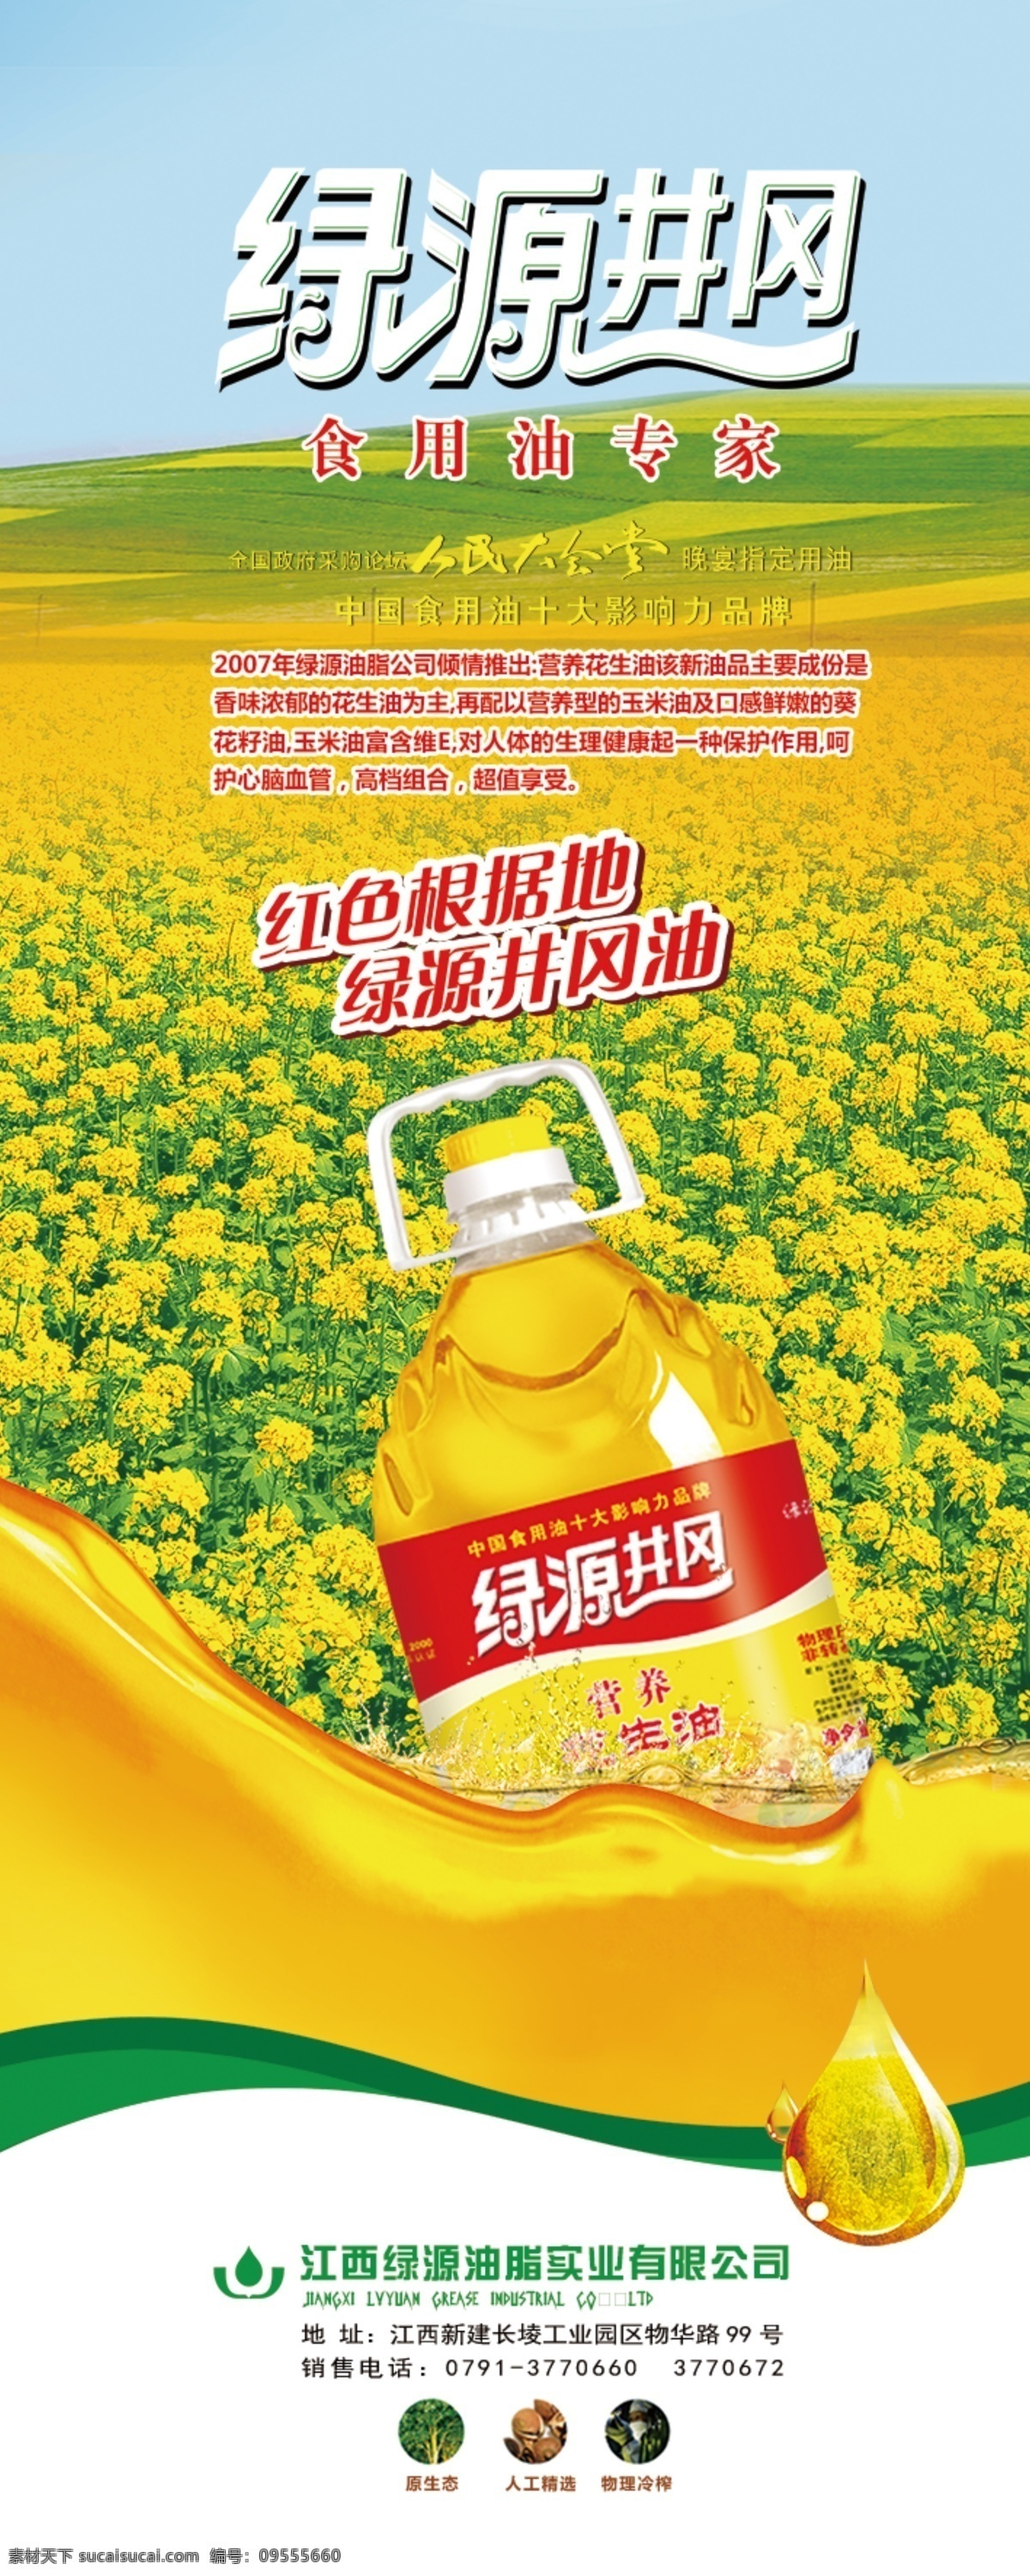 绿源井岗 海报 食用油 黄色